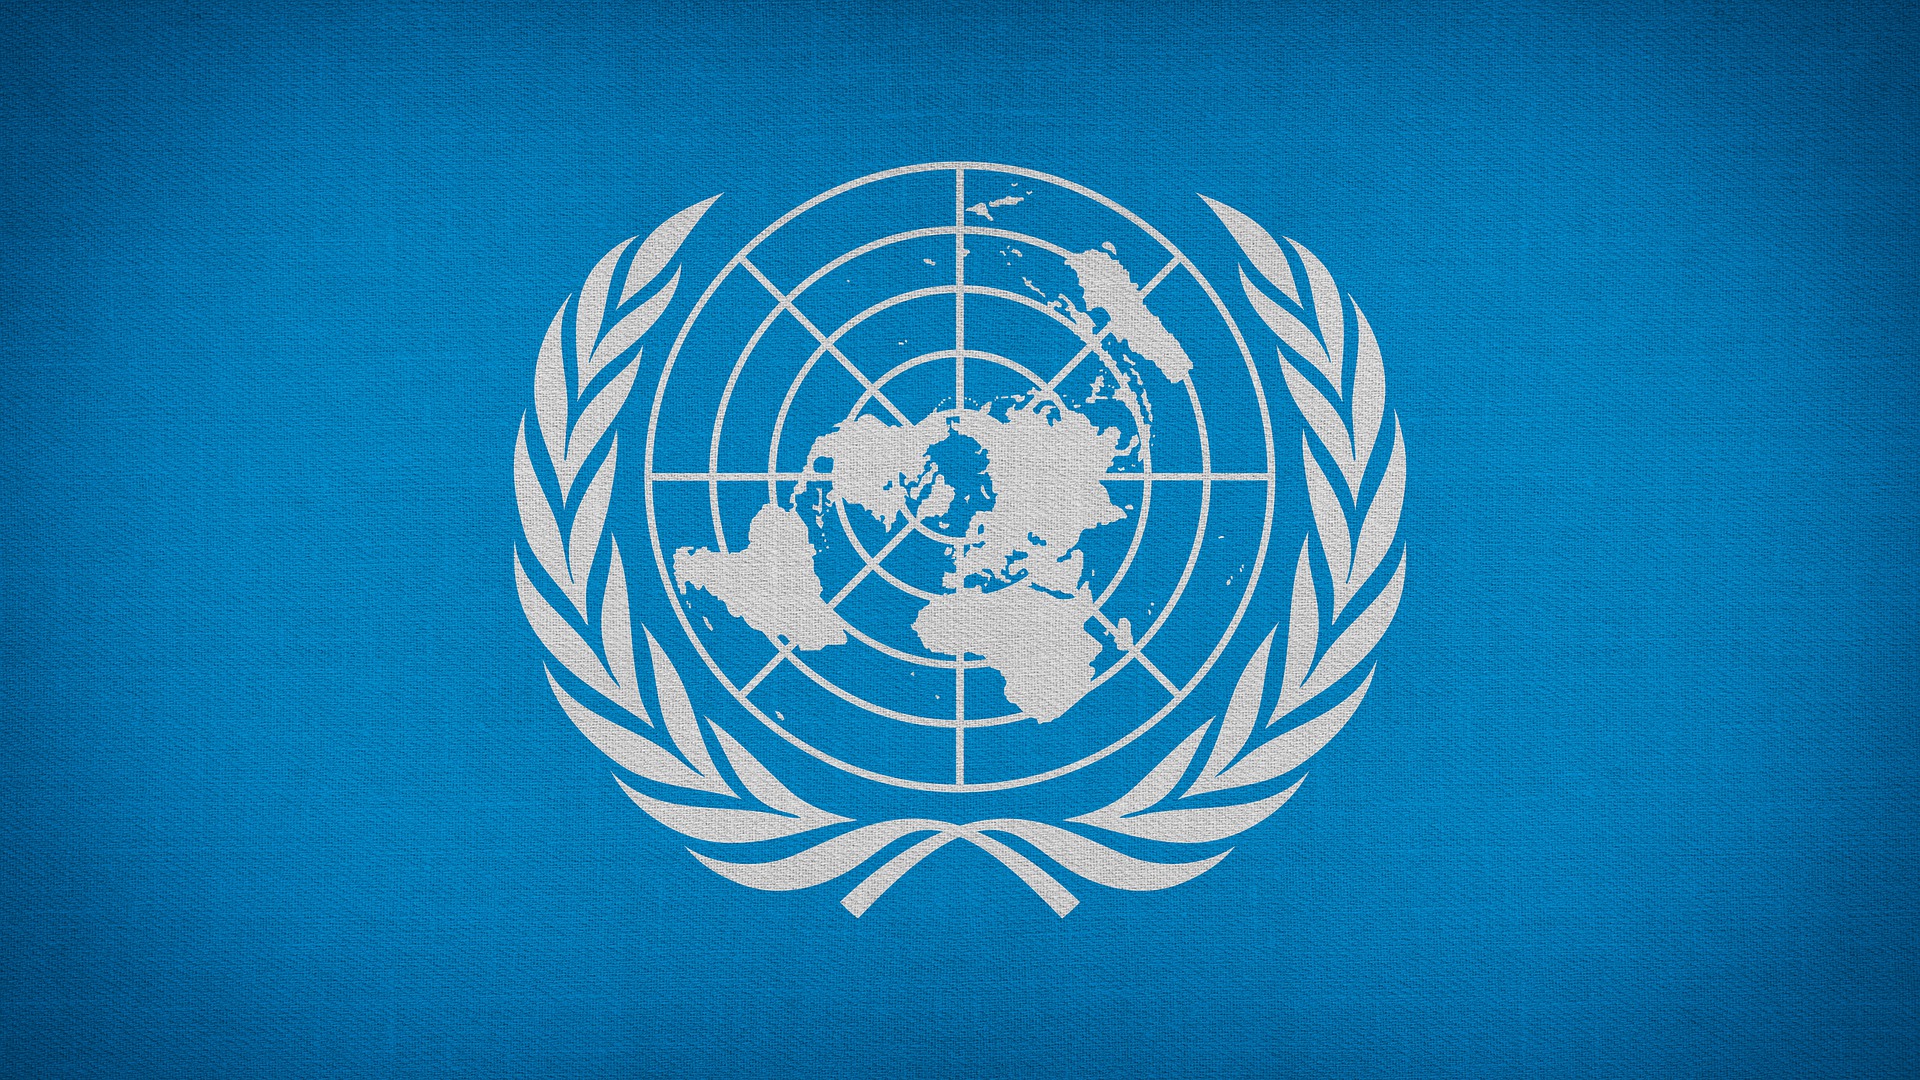 Мировая организация оон. Организация Объединенных наций (ООН). Флаг ООН. Флаг организации ООН. Флаг миротворцев ООН.